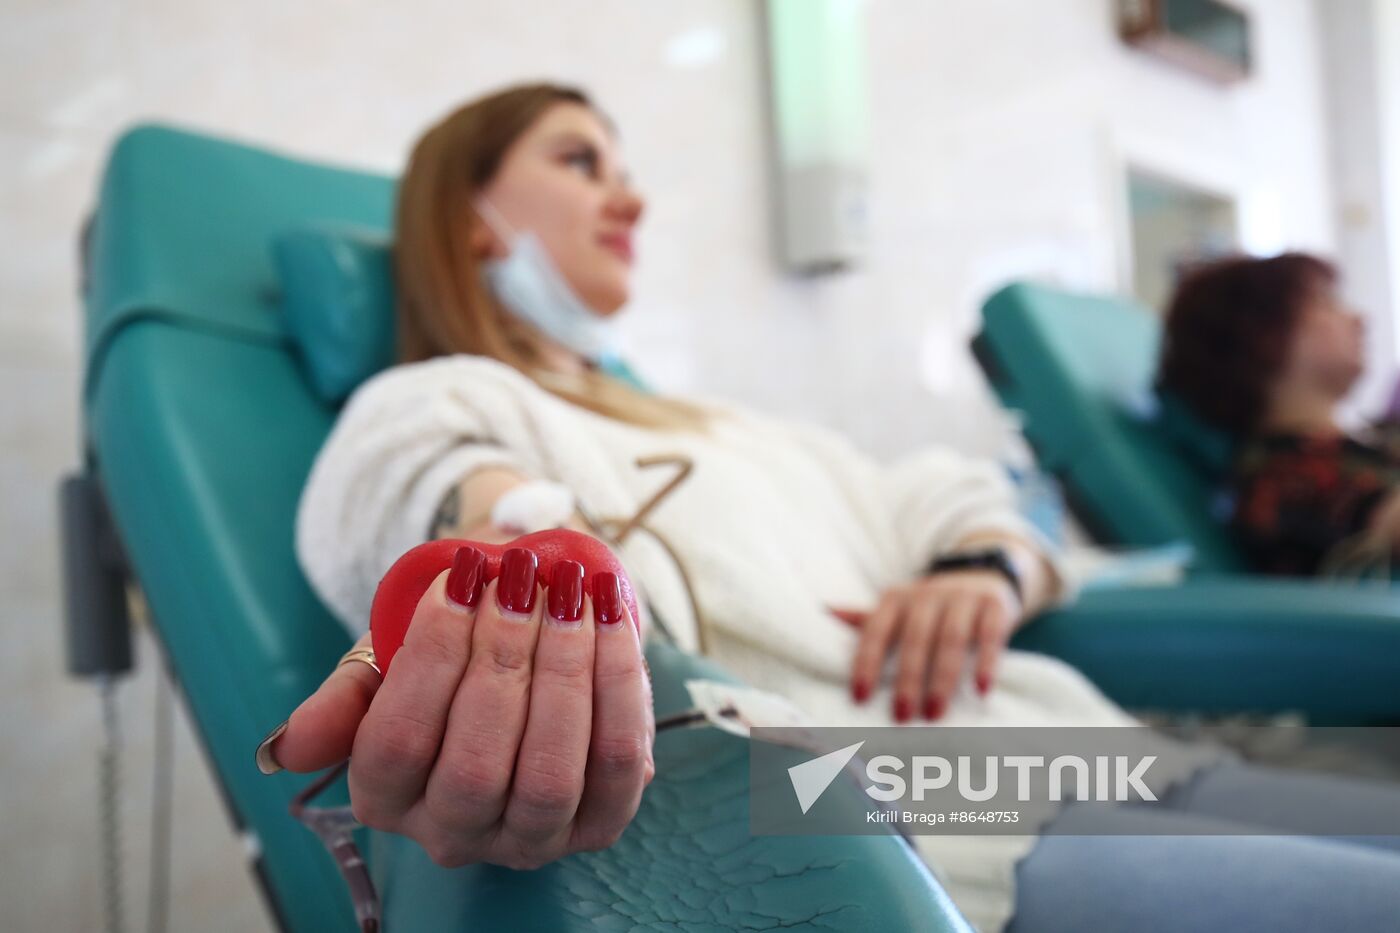 Russia Terrorist Attack Blood Donation